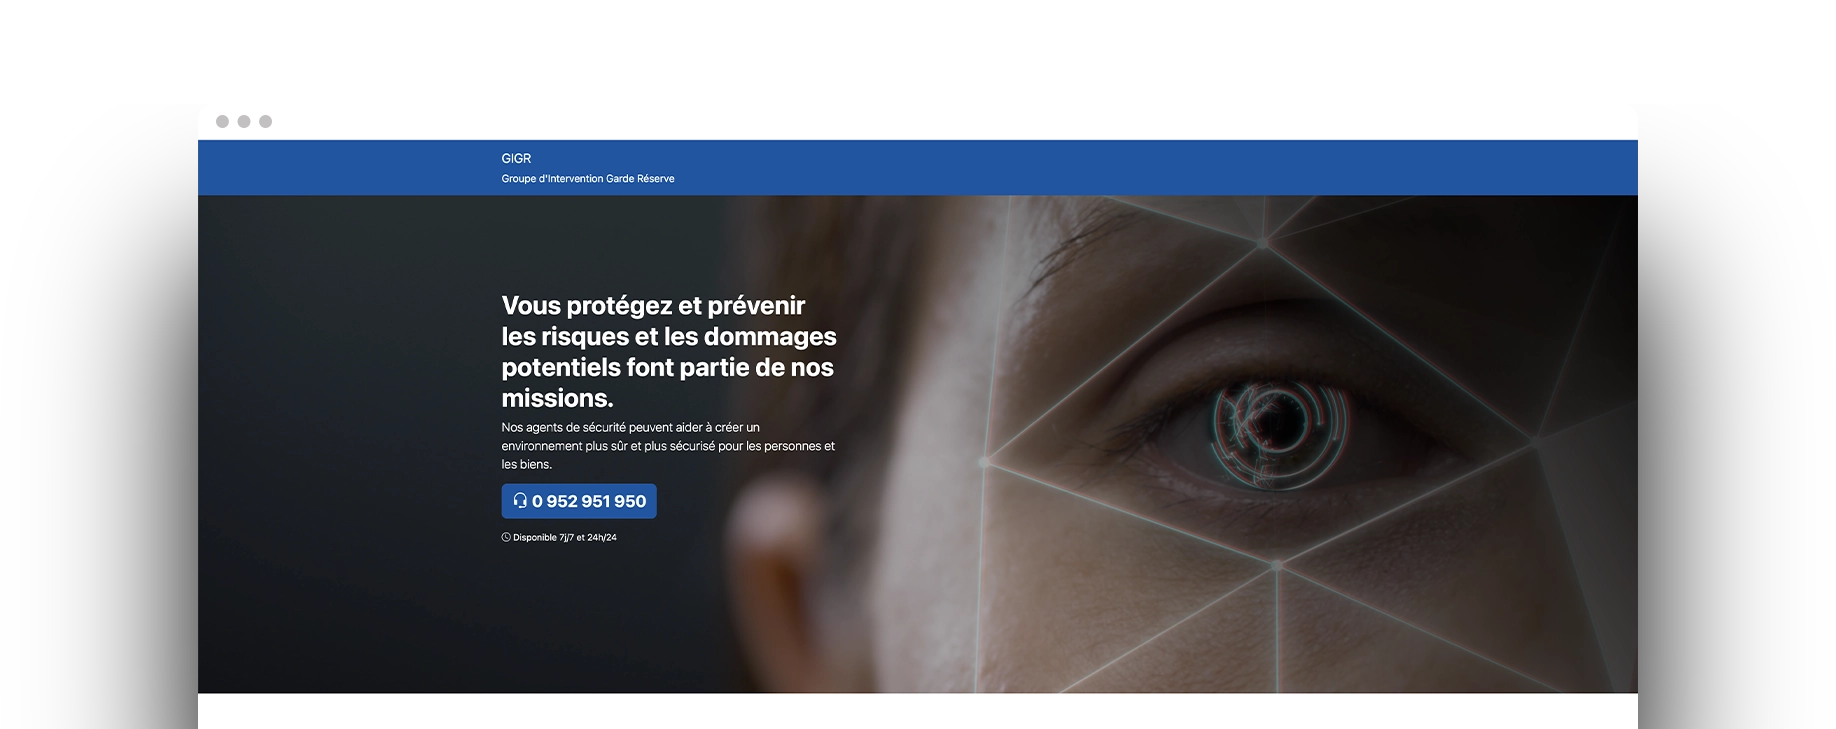 Création de site web pour GIGR Protection - Agence Webideal